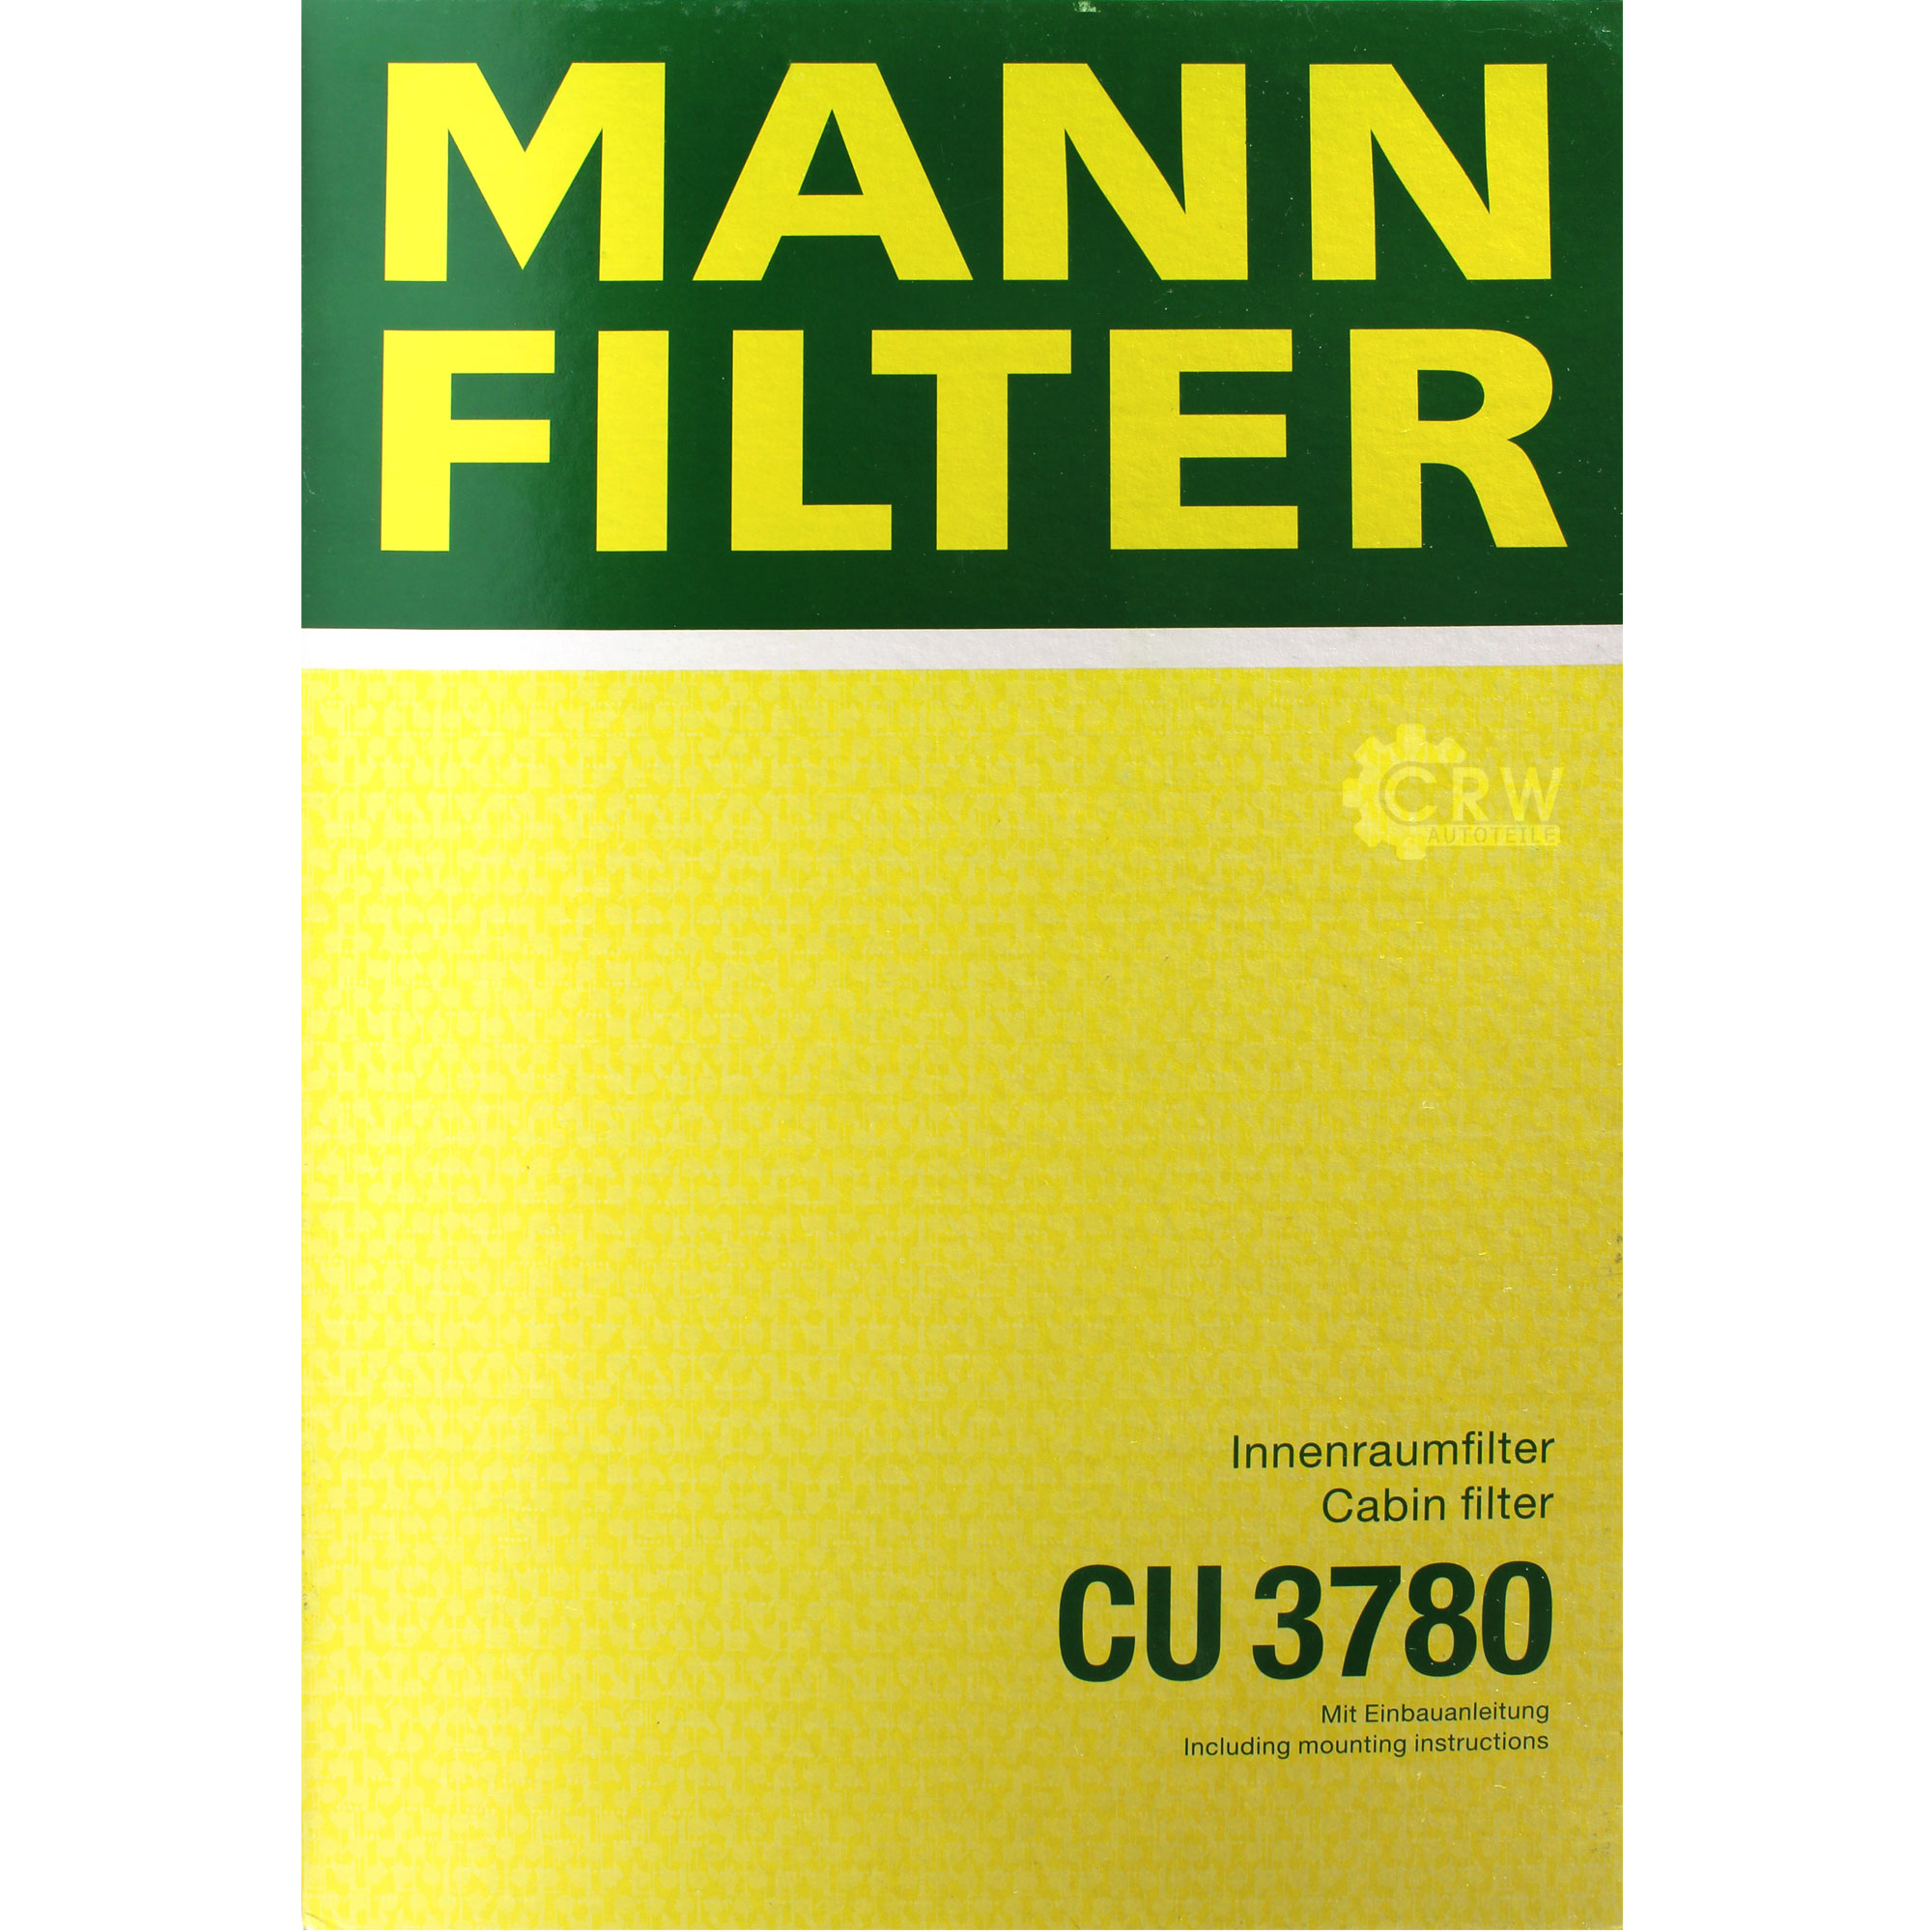 CONTROLLO SET 5L Olio per Mercedes 229.51 5W30 + Mann filtro 11104096 .